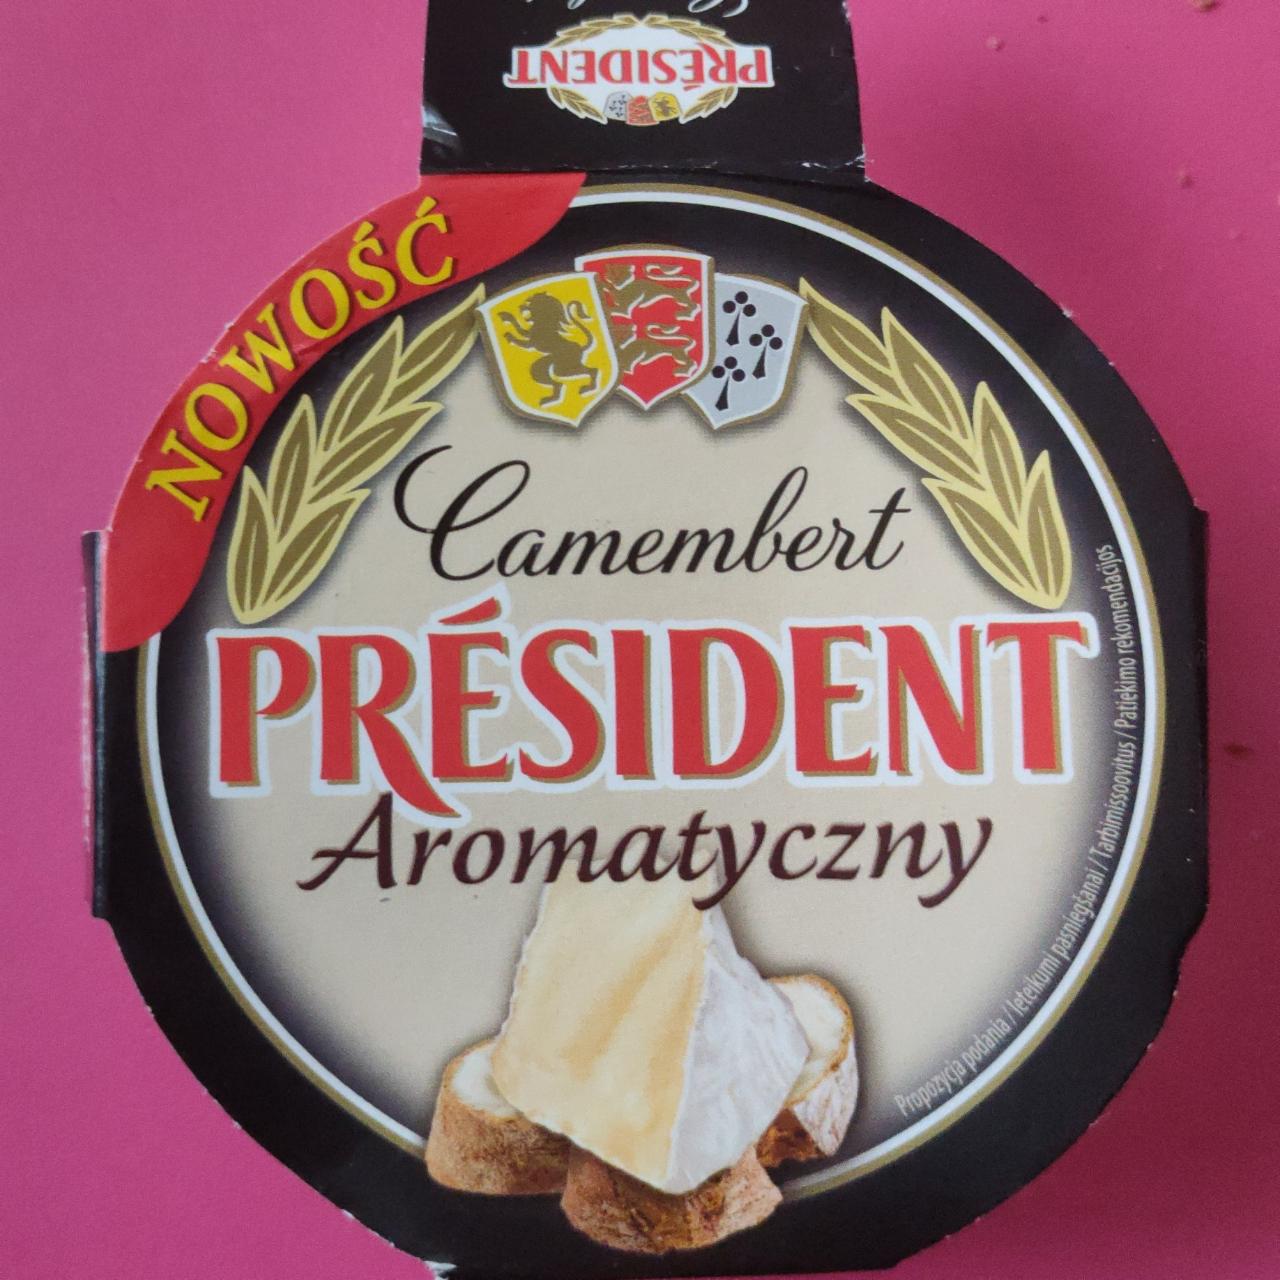 Фото - President Camembert aromatyczny